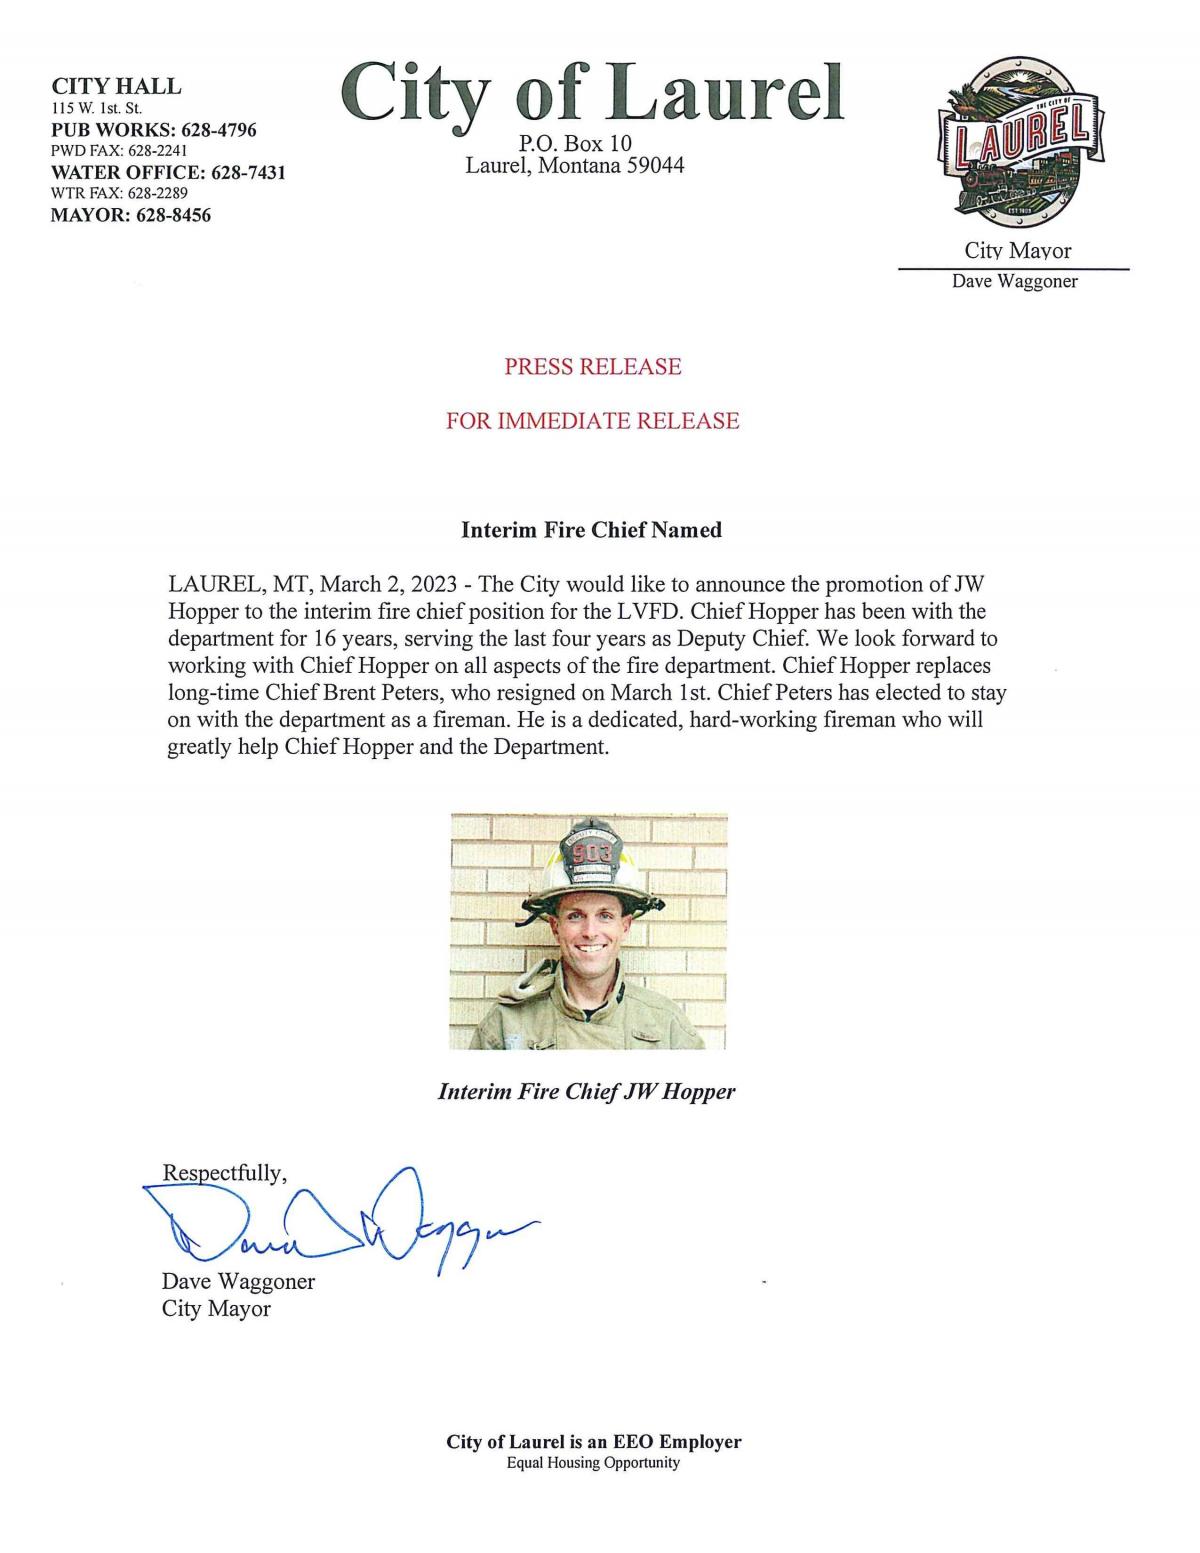 Press release - interim fire chief